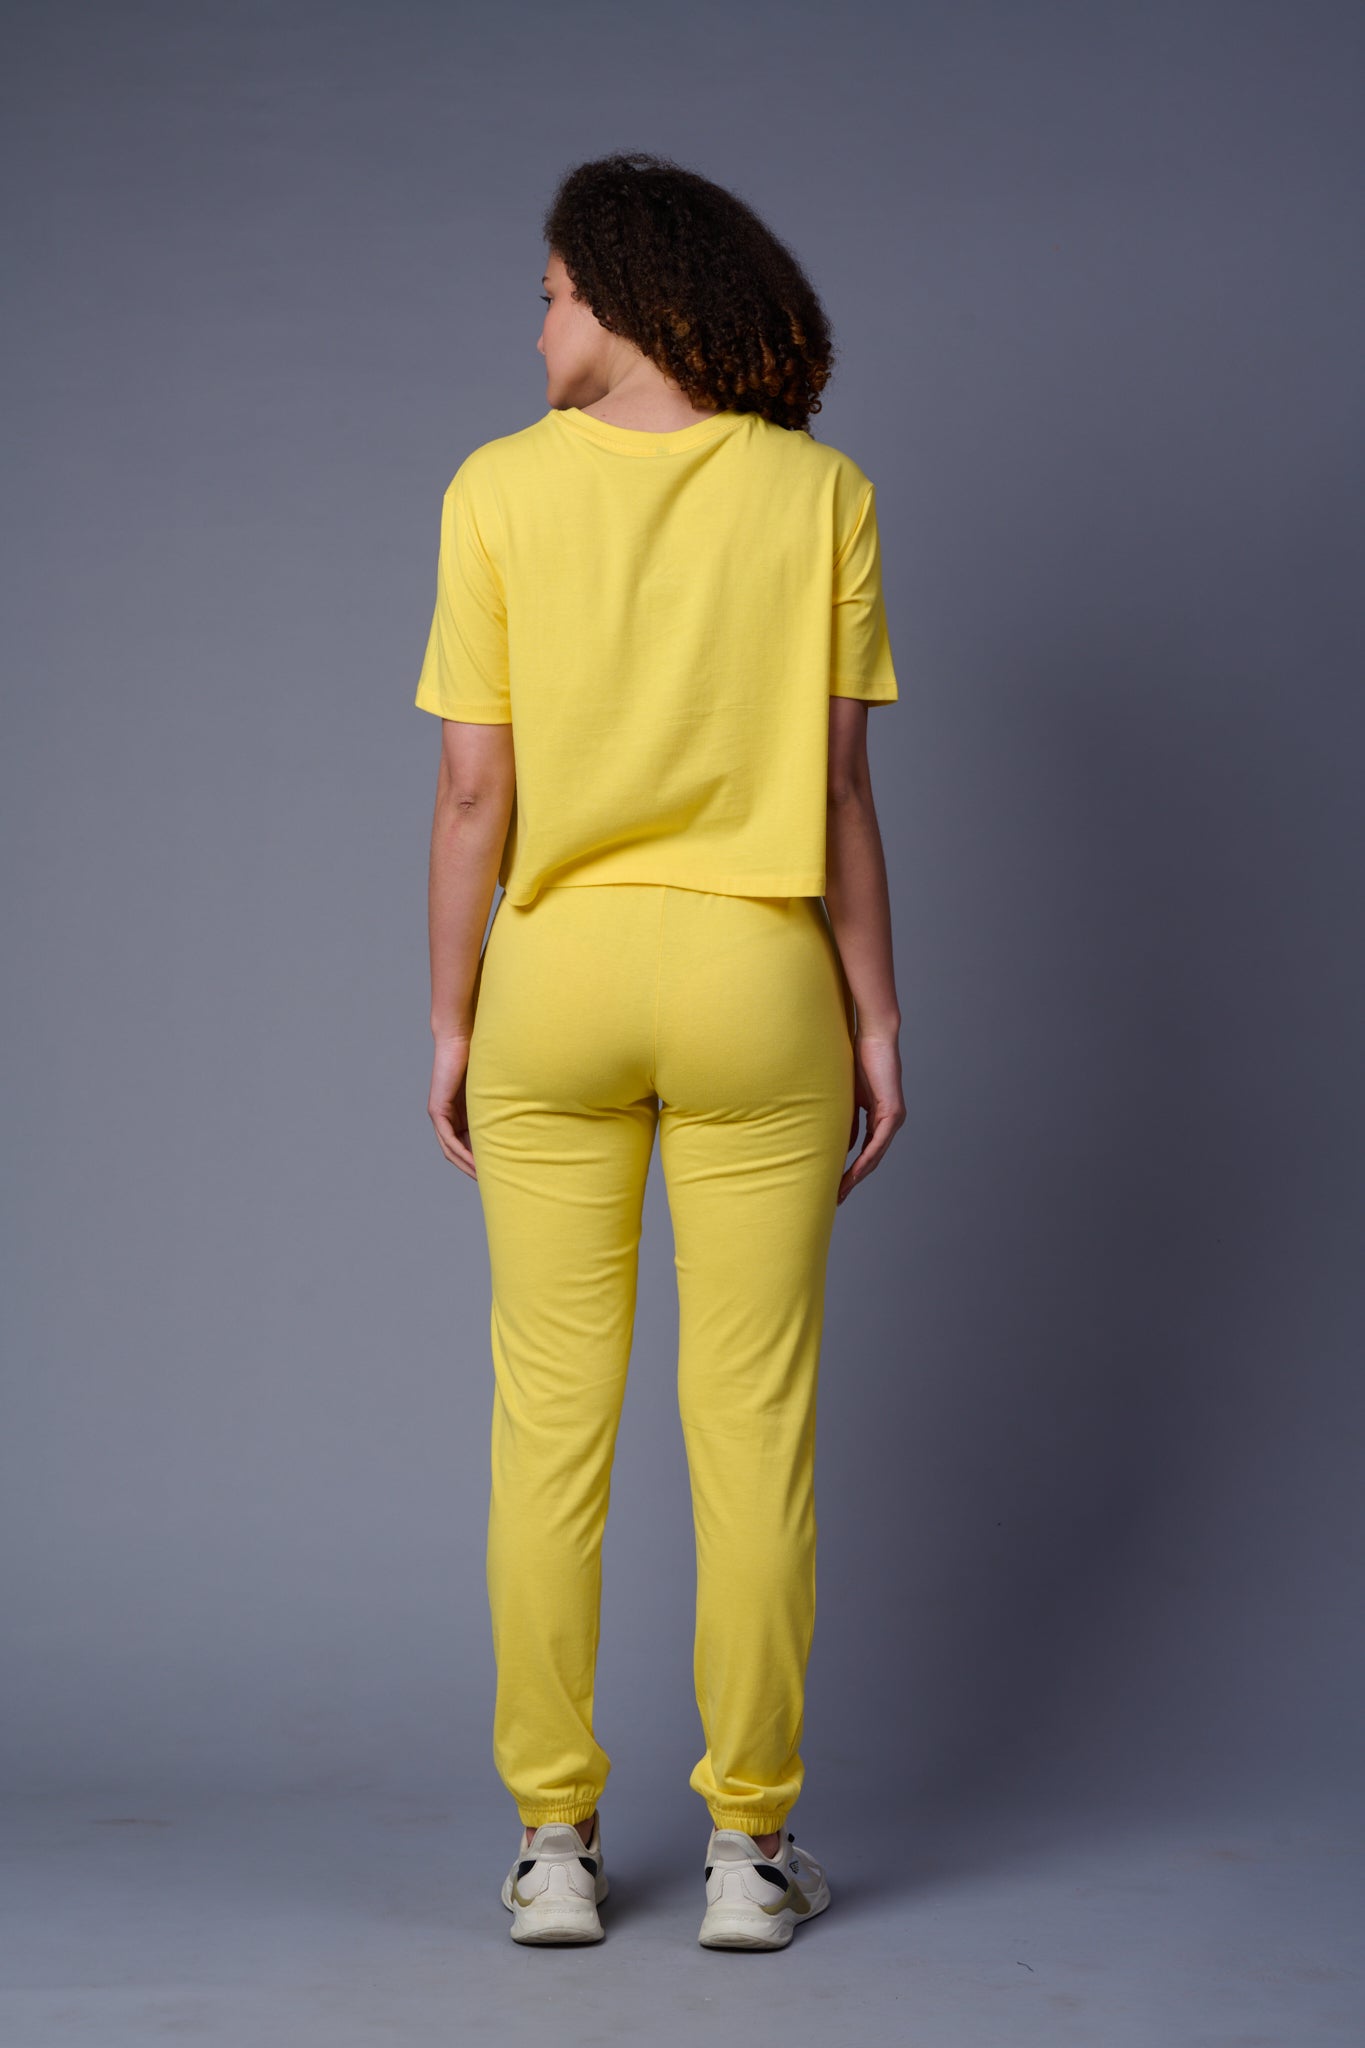 Flower Printed Lemon Yellow Full Size Co-ord Set for Women